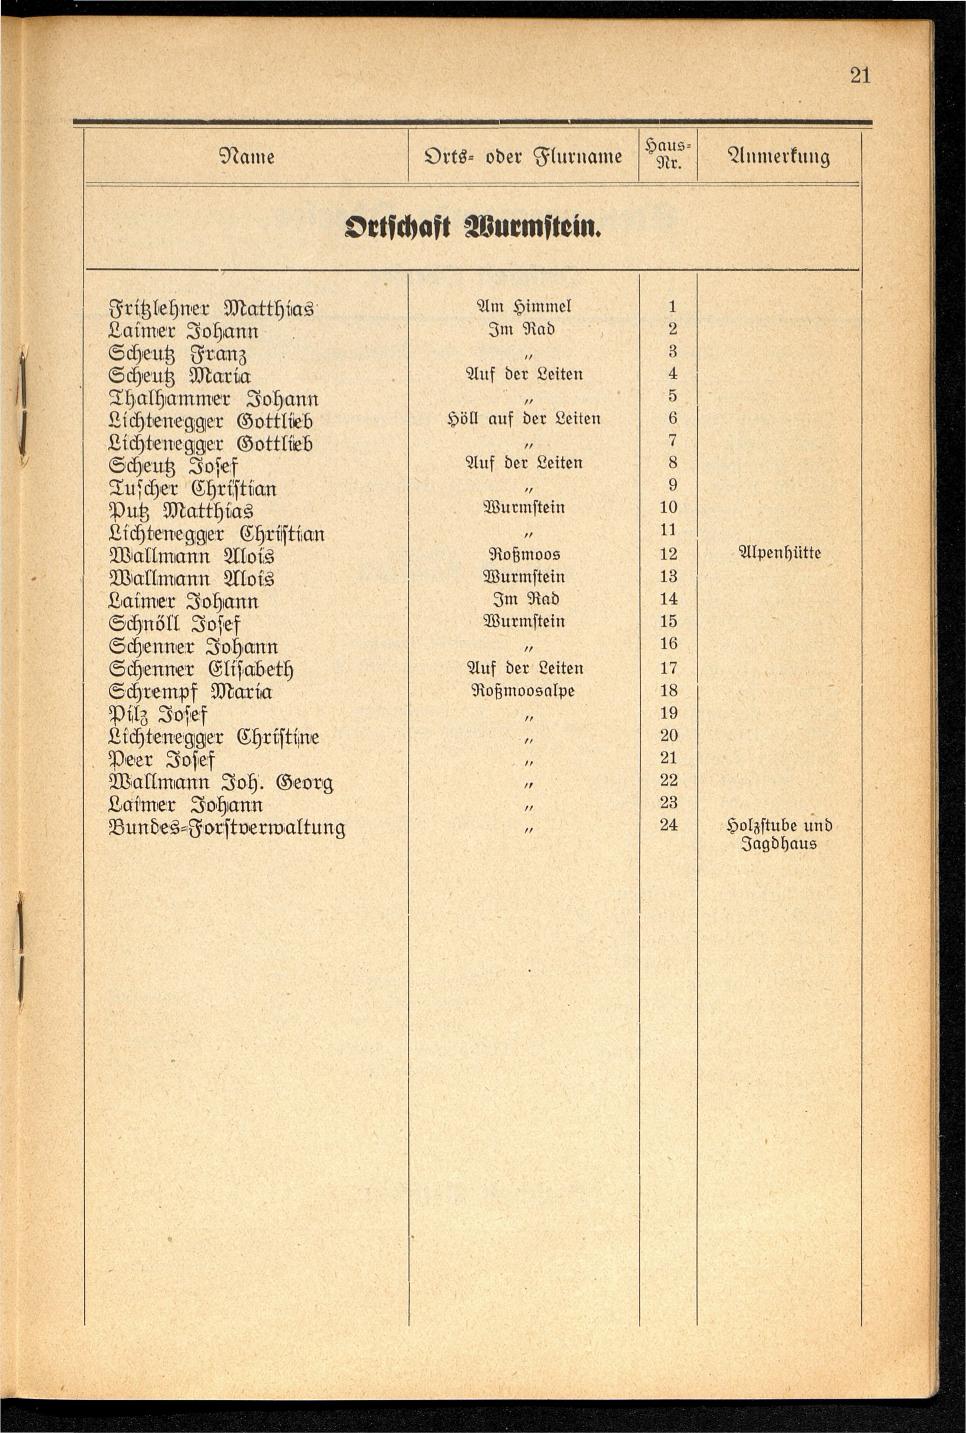 Häuser-Verzeichnis der Gemeinde Goisern nach dem Stande von November 1937 - Seite 23